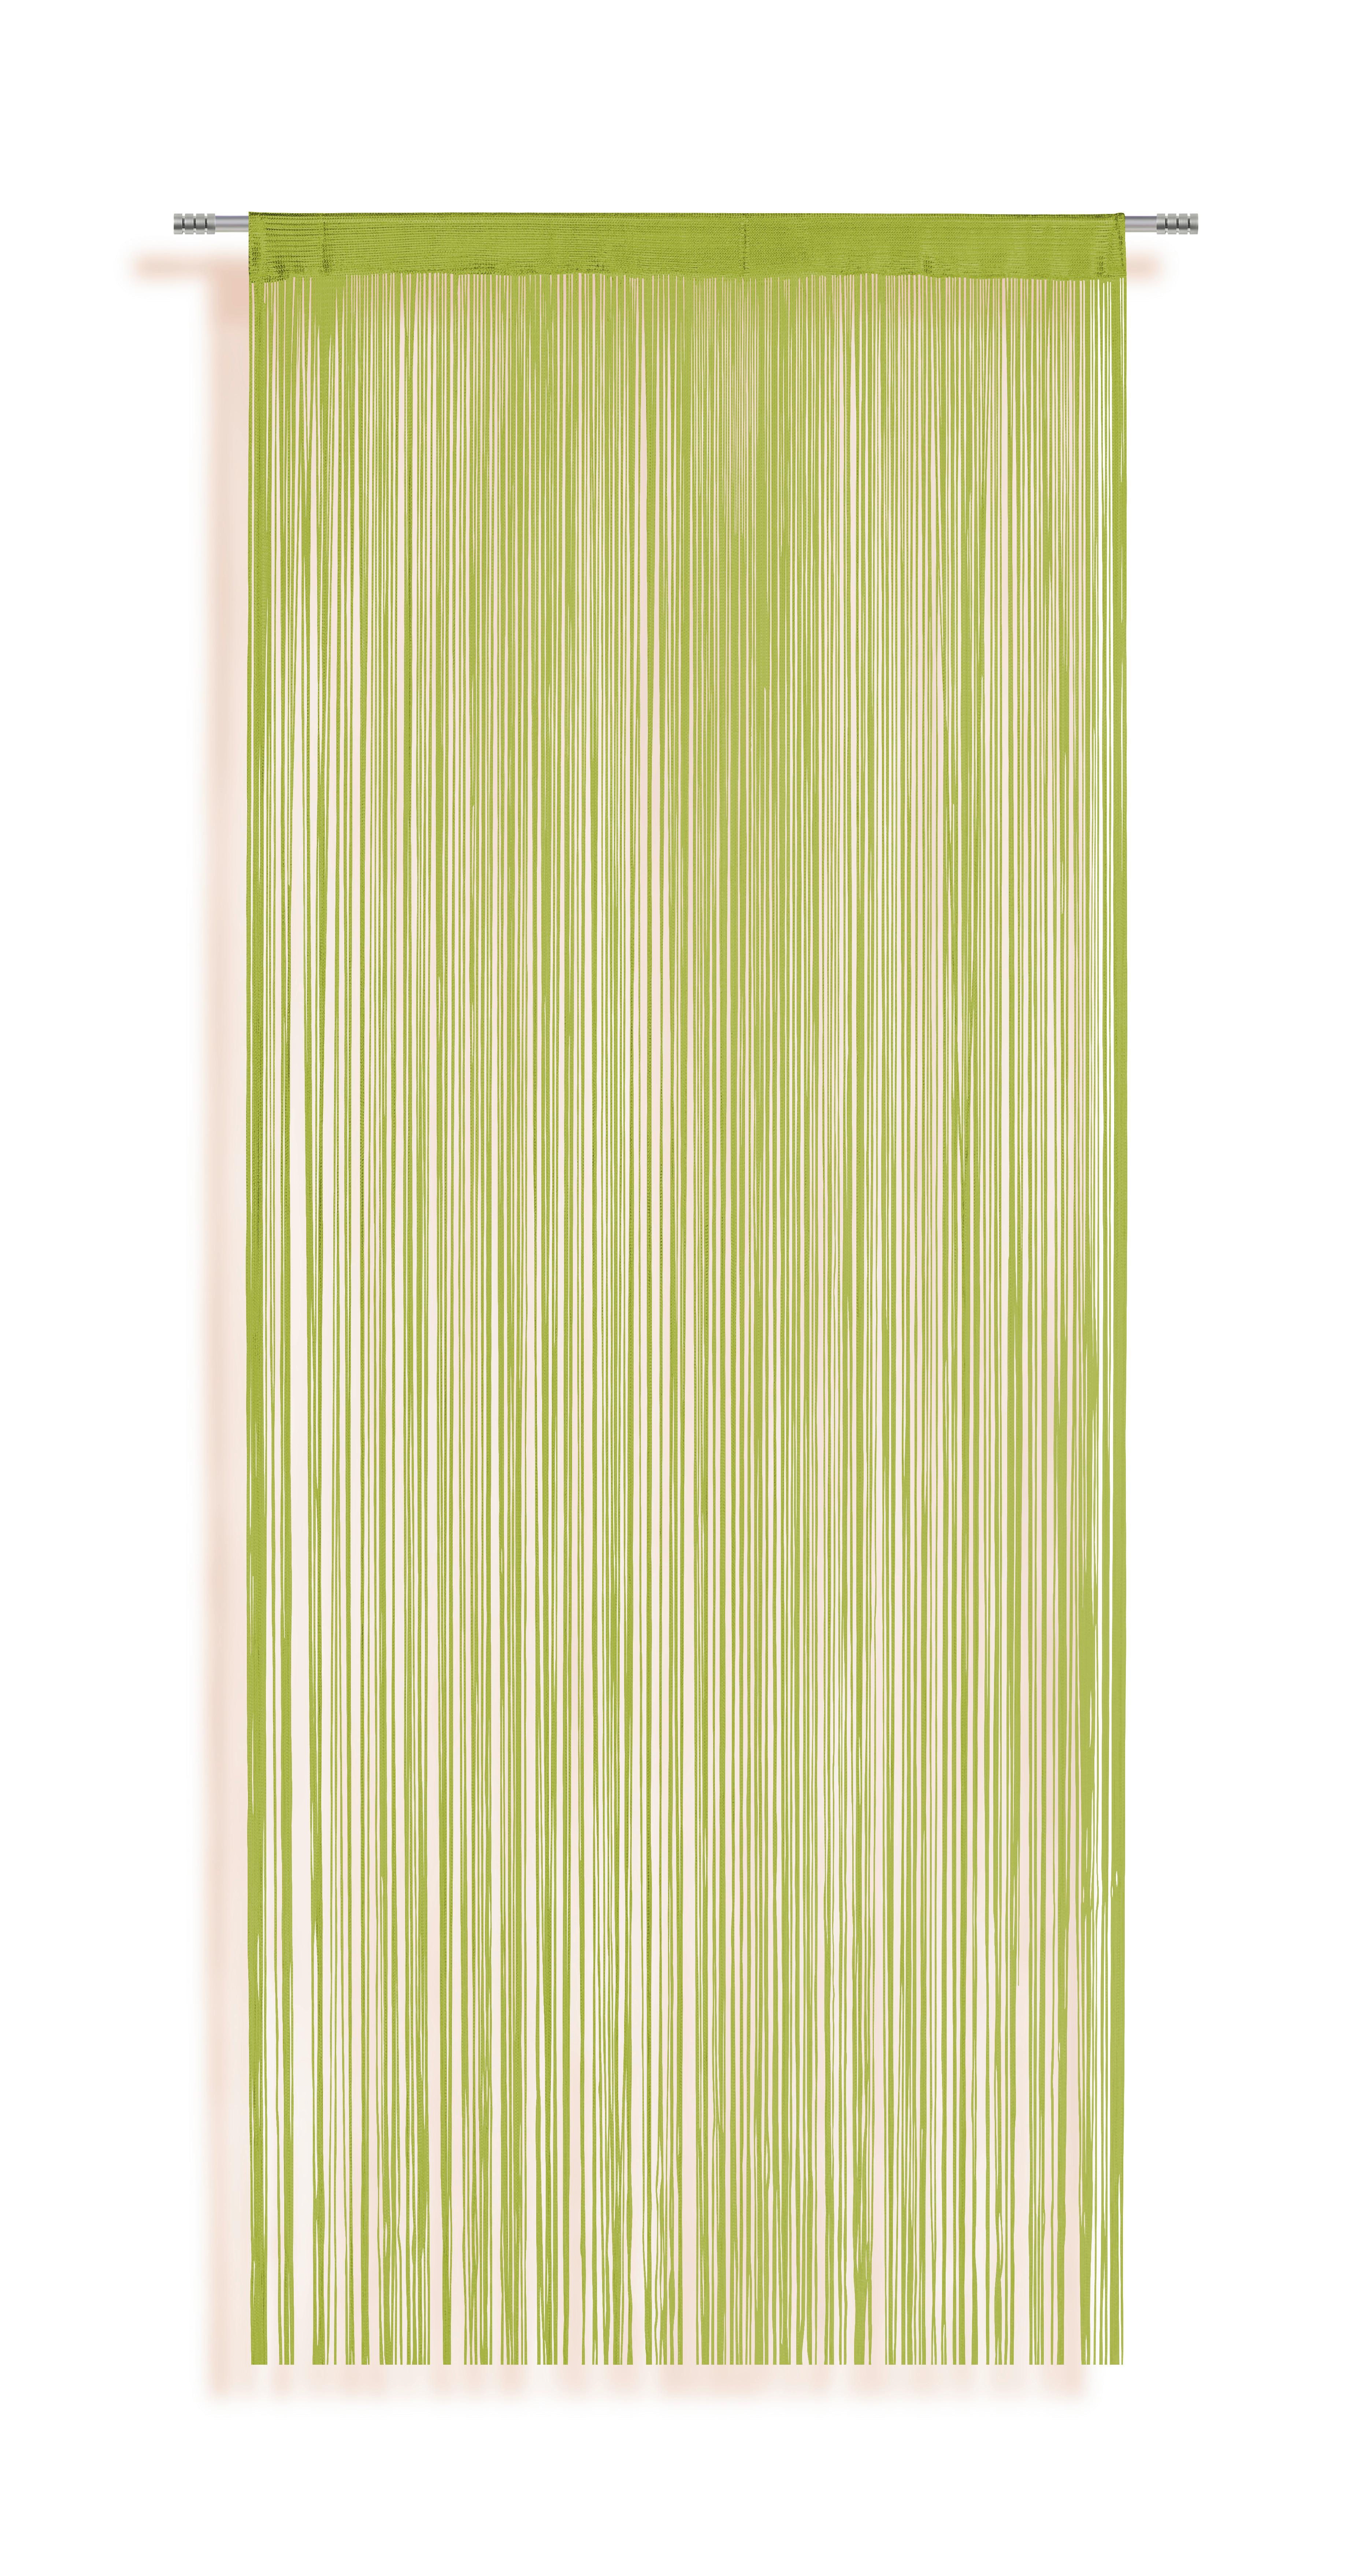 grün Fadenvorhang Fadenstore Messe B1 schwer entflammbar 090 cm x 240 cm BxH 